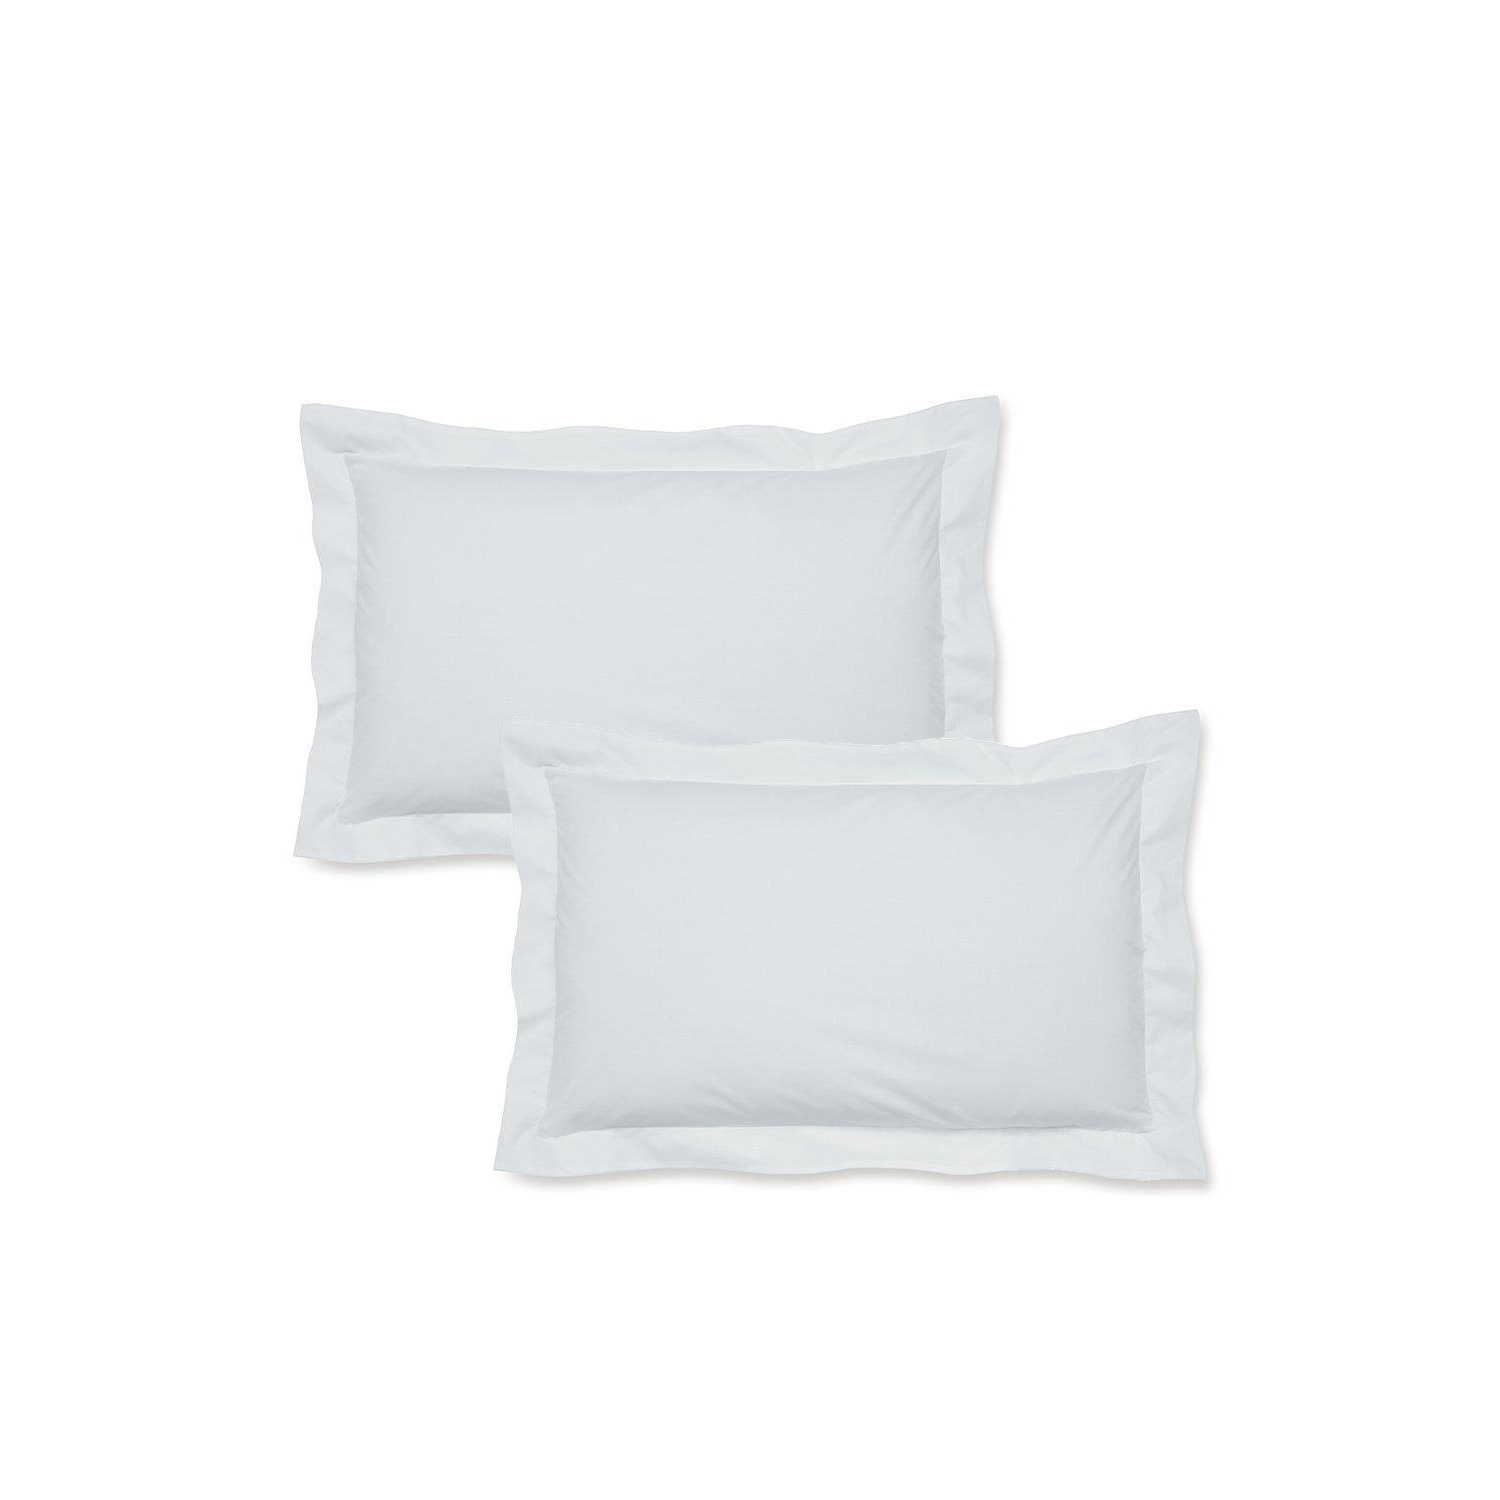 'Easy Iron Percale' Oxford Pillowcase Pair - image 1